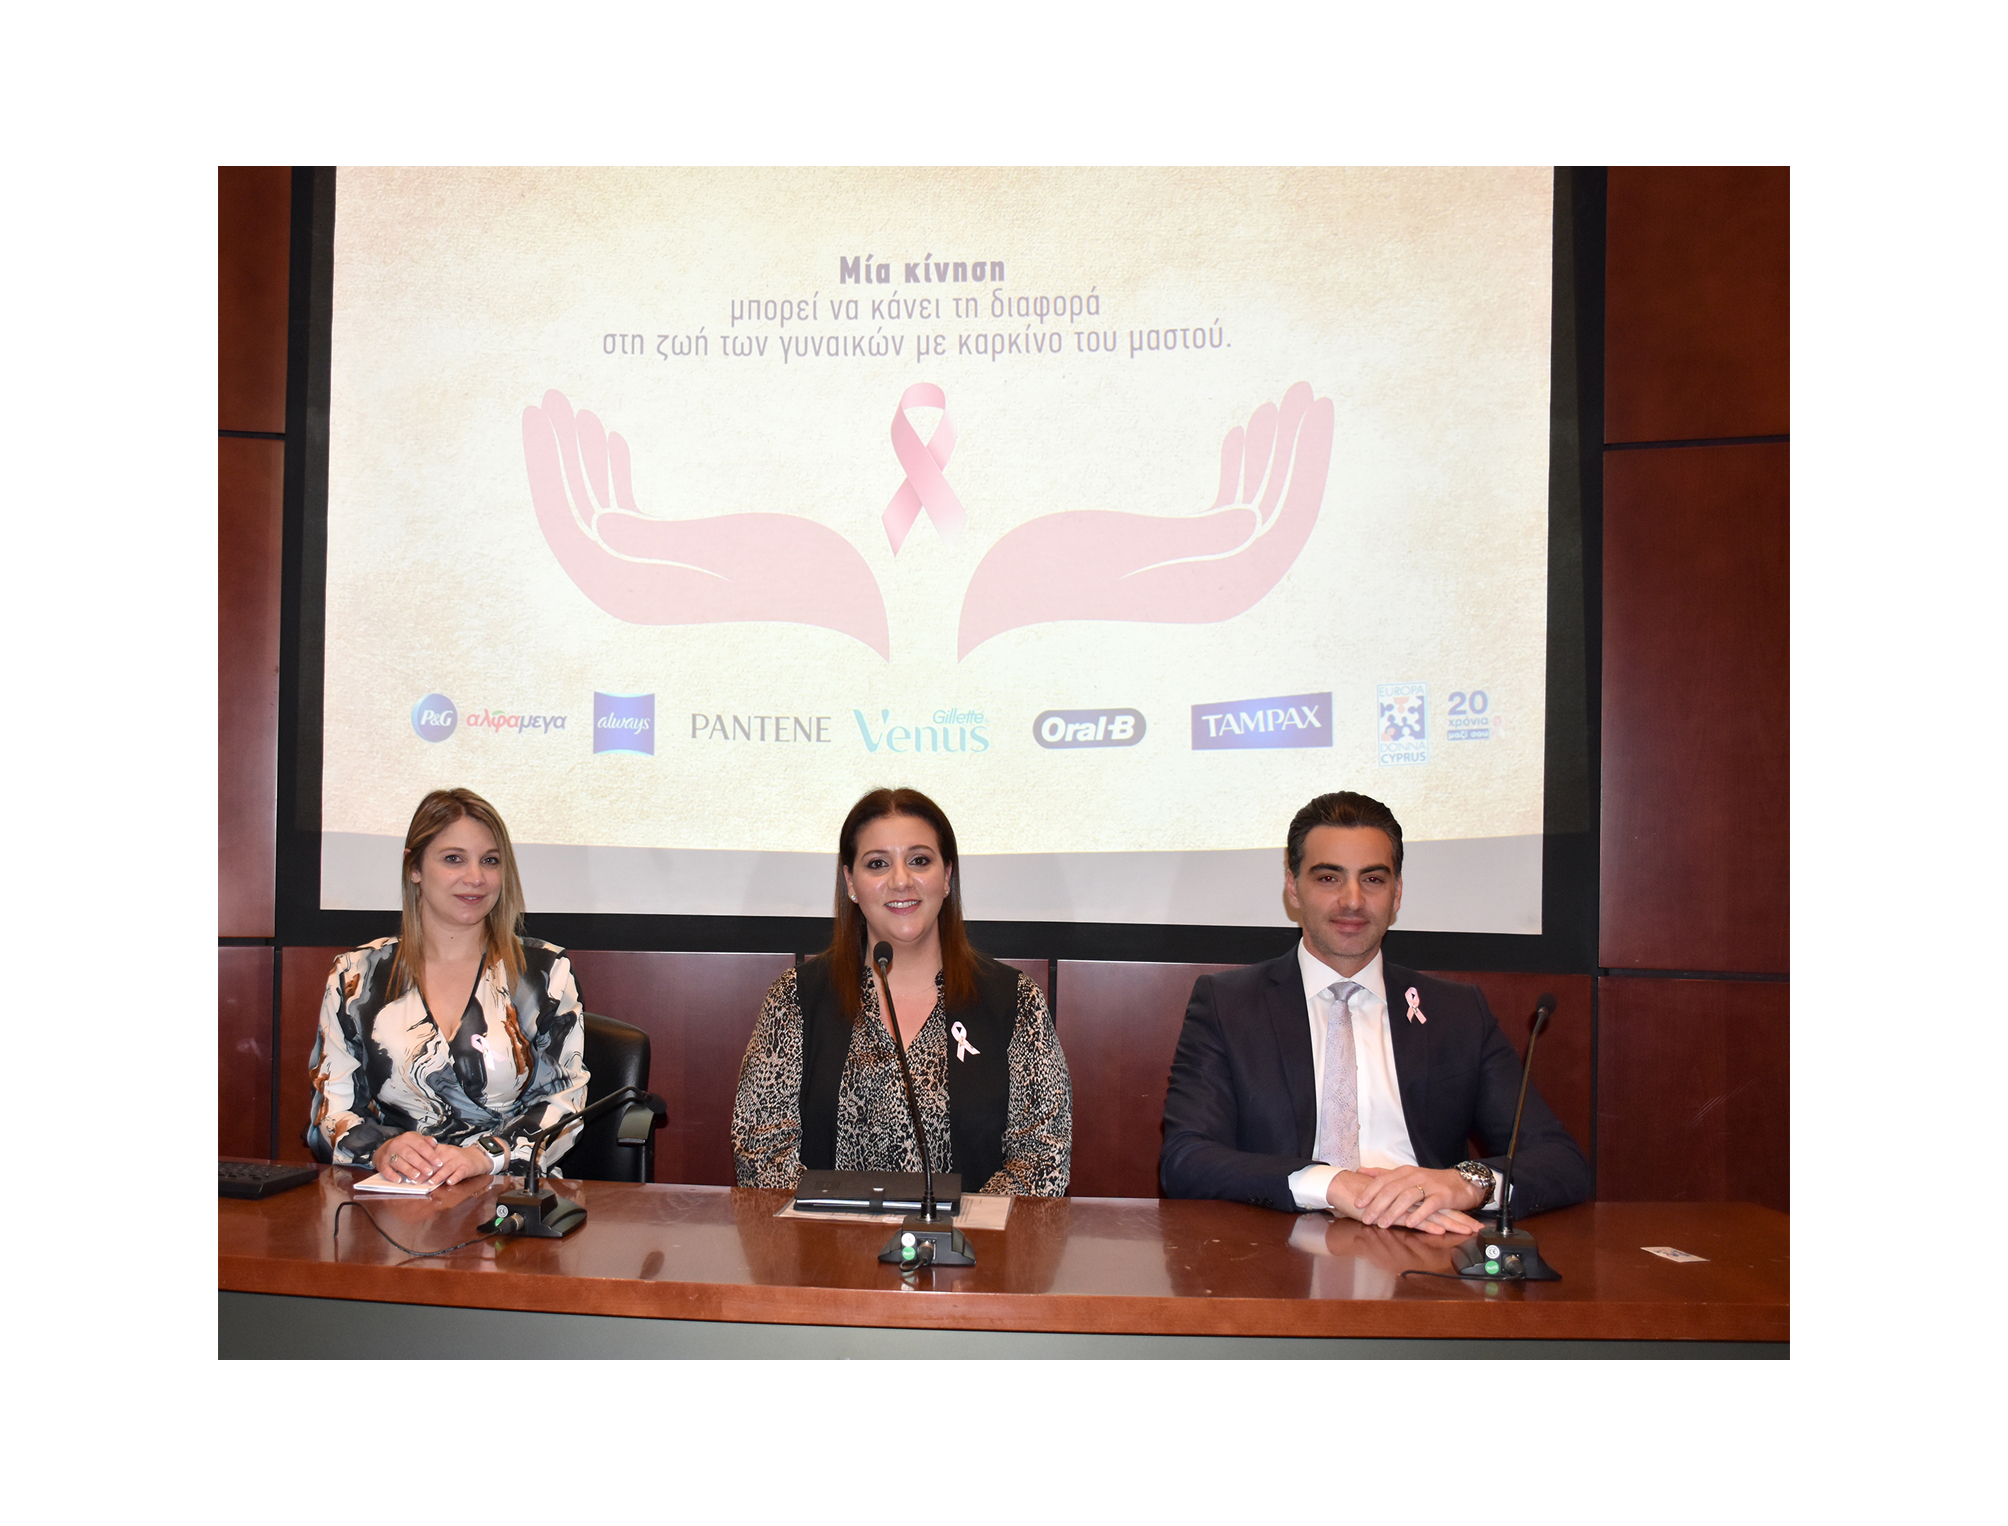 Συμμαχία στα ροζ – Η Diplomat και οι Υπεραγορές ΑΛΦΑΜΕΓΑ ενισχύουν τα προγράμματα της EUROPA DONNA Κύπρου